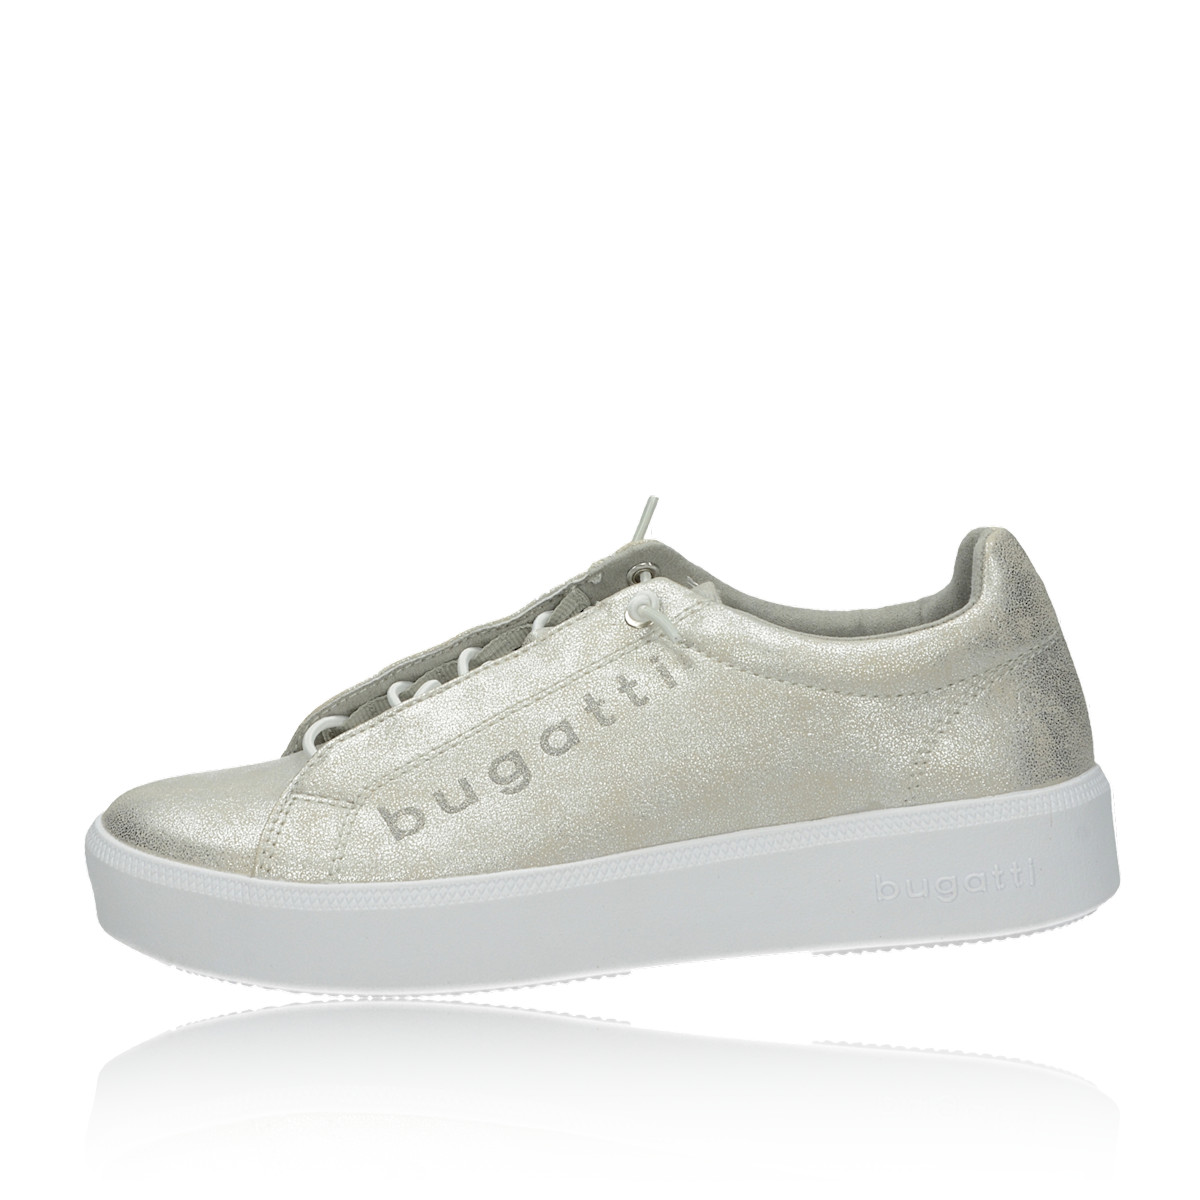 Bugatti women's comfortable sneaker - beige | Robel.shoes